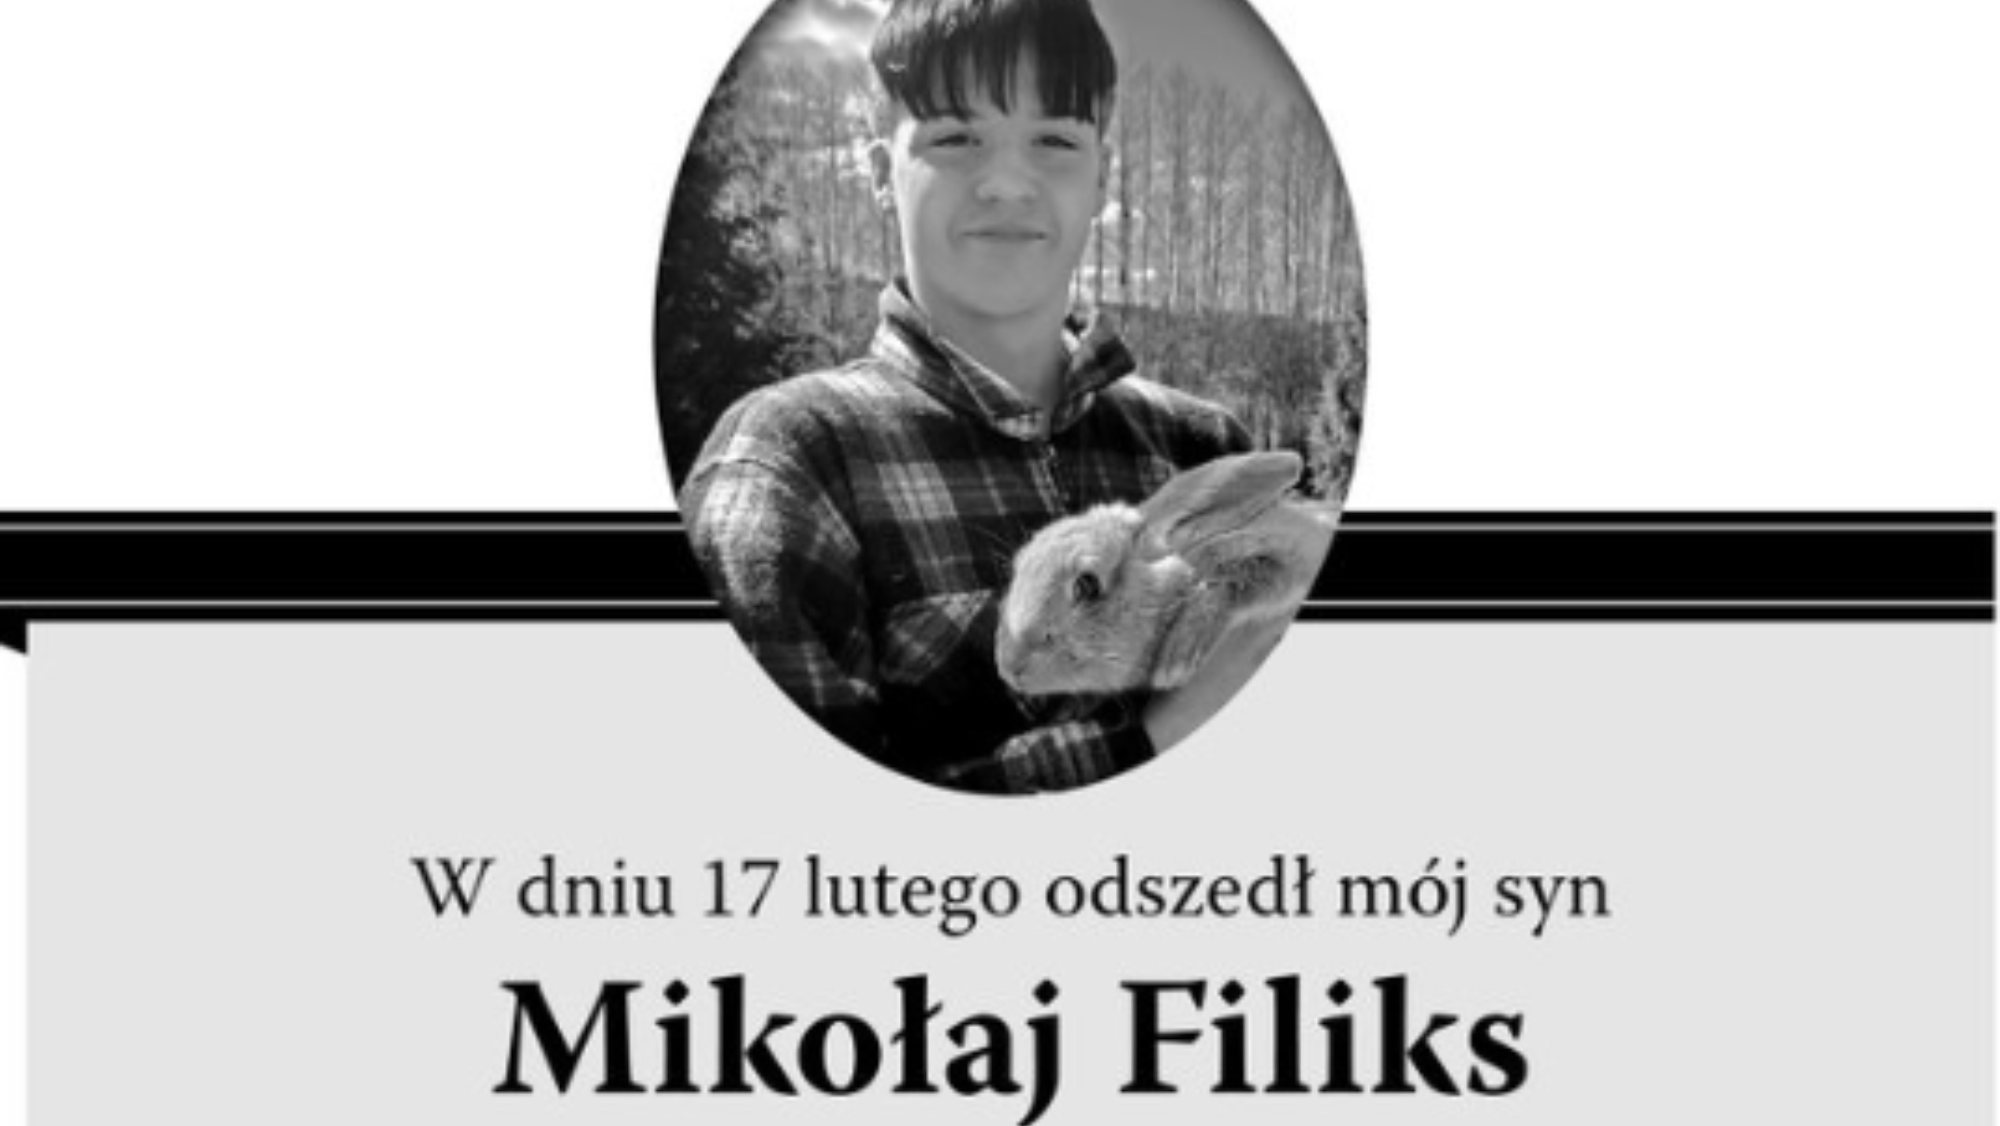 Magdalena Filiks, deputada do Plataforma Cívica, revelou esta sexta-feira no Twitter que o filho, de 15 anos, cometeu suicídio no passado dia 17 de fevereiro